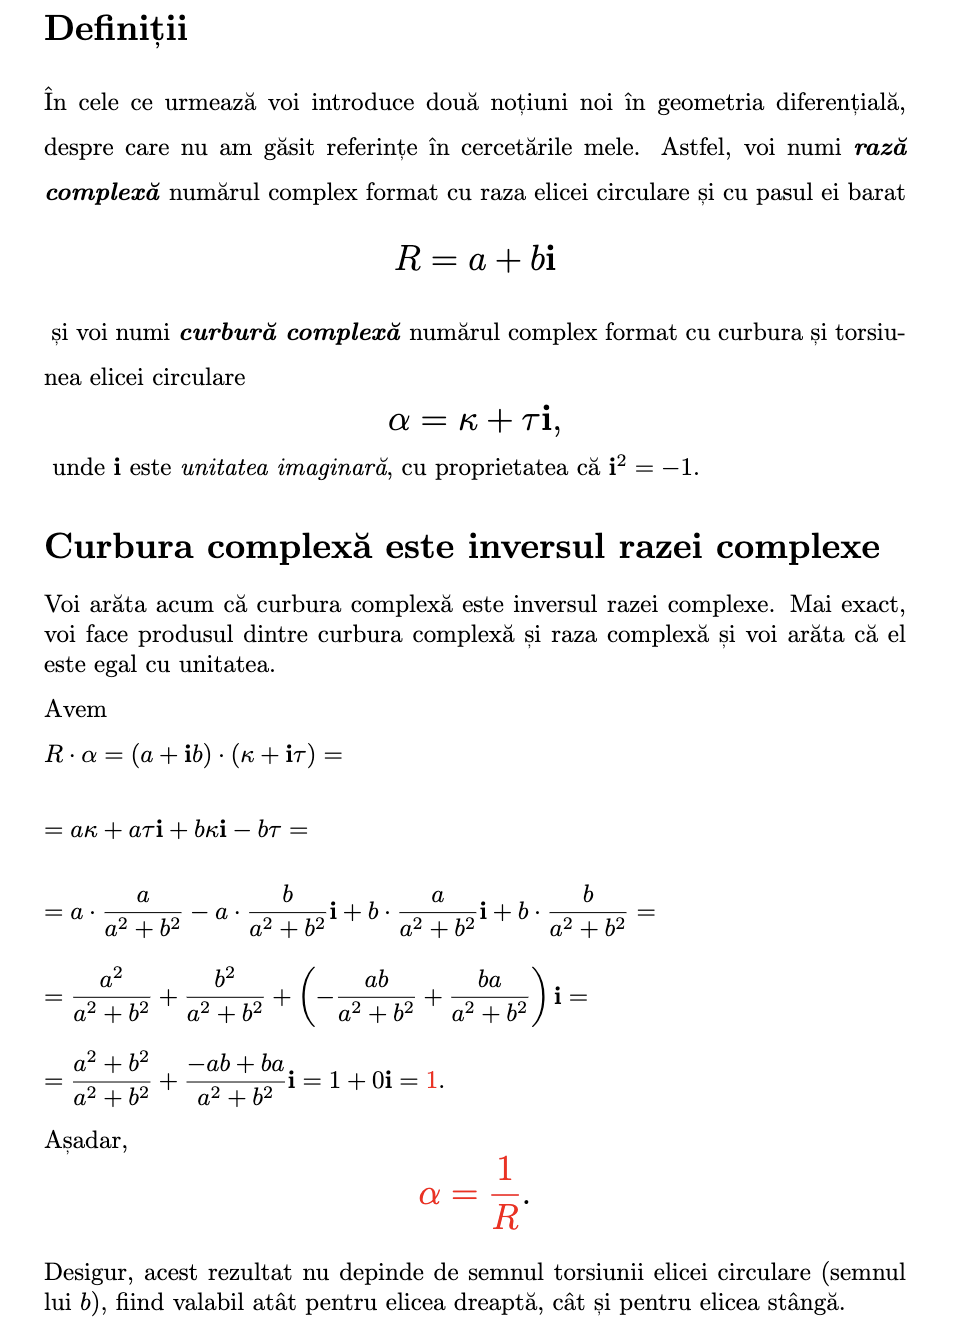 Curbura complexă este inversul razei complexe - Pagina 2 Captur21